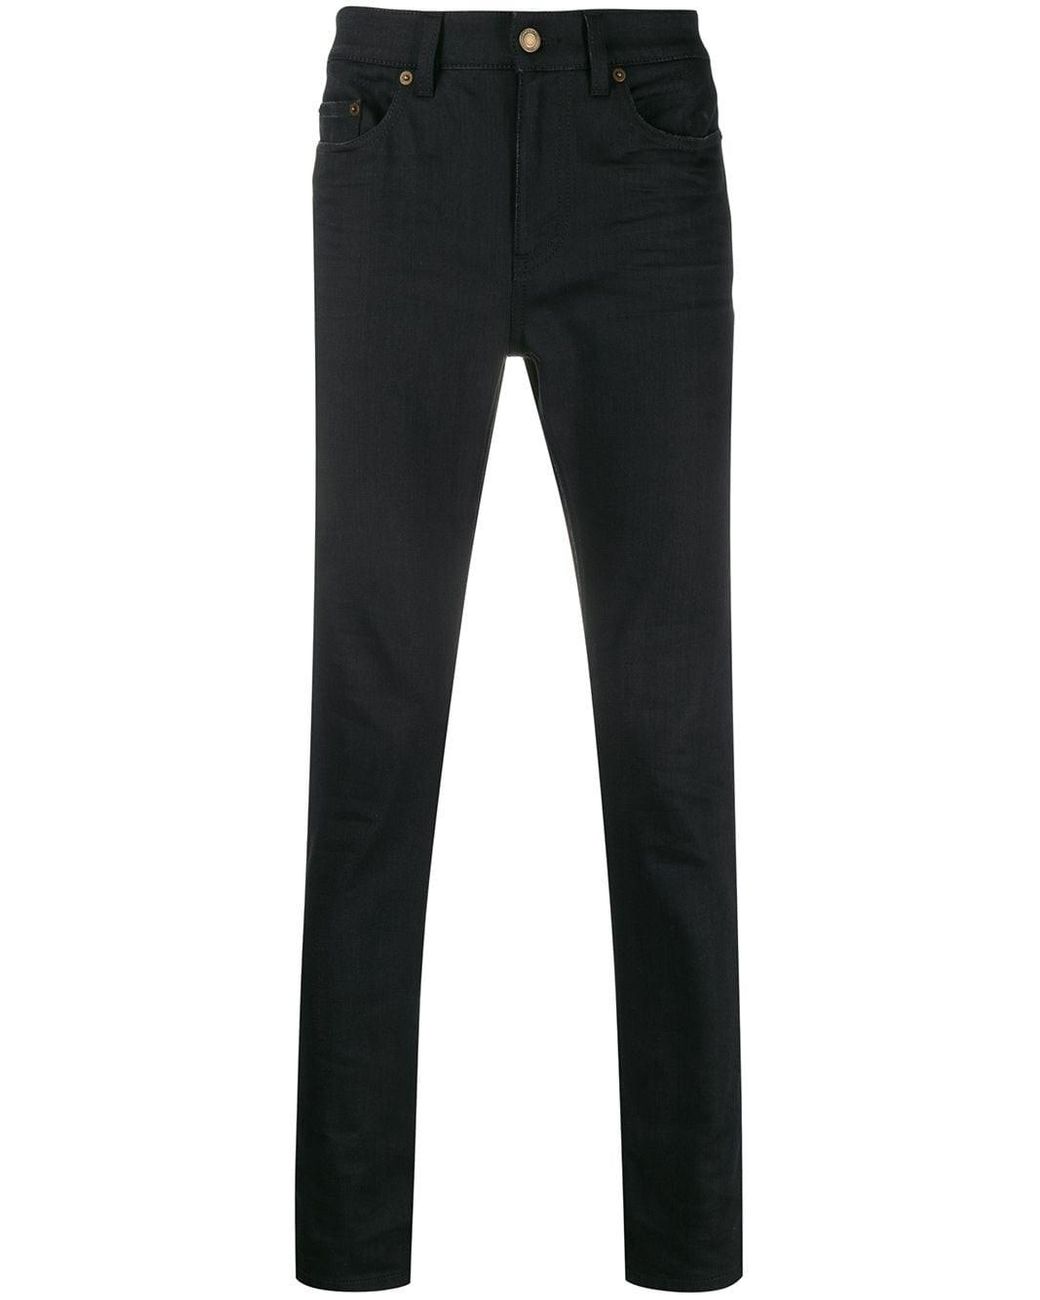 Saint Laurent Denim Skinny Jeans in Black for Men - Lyst